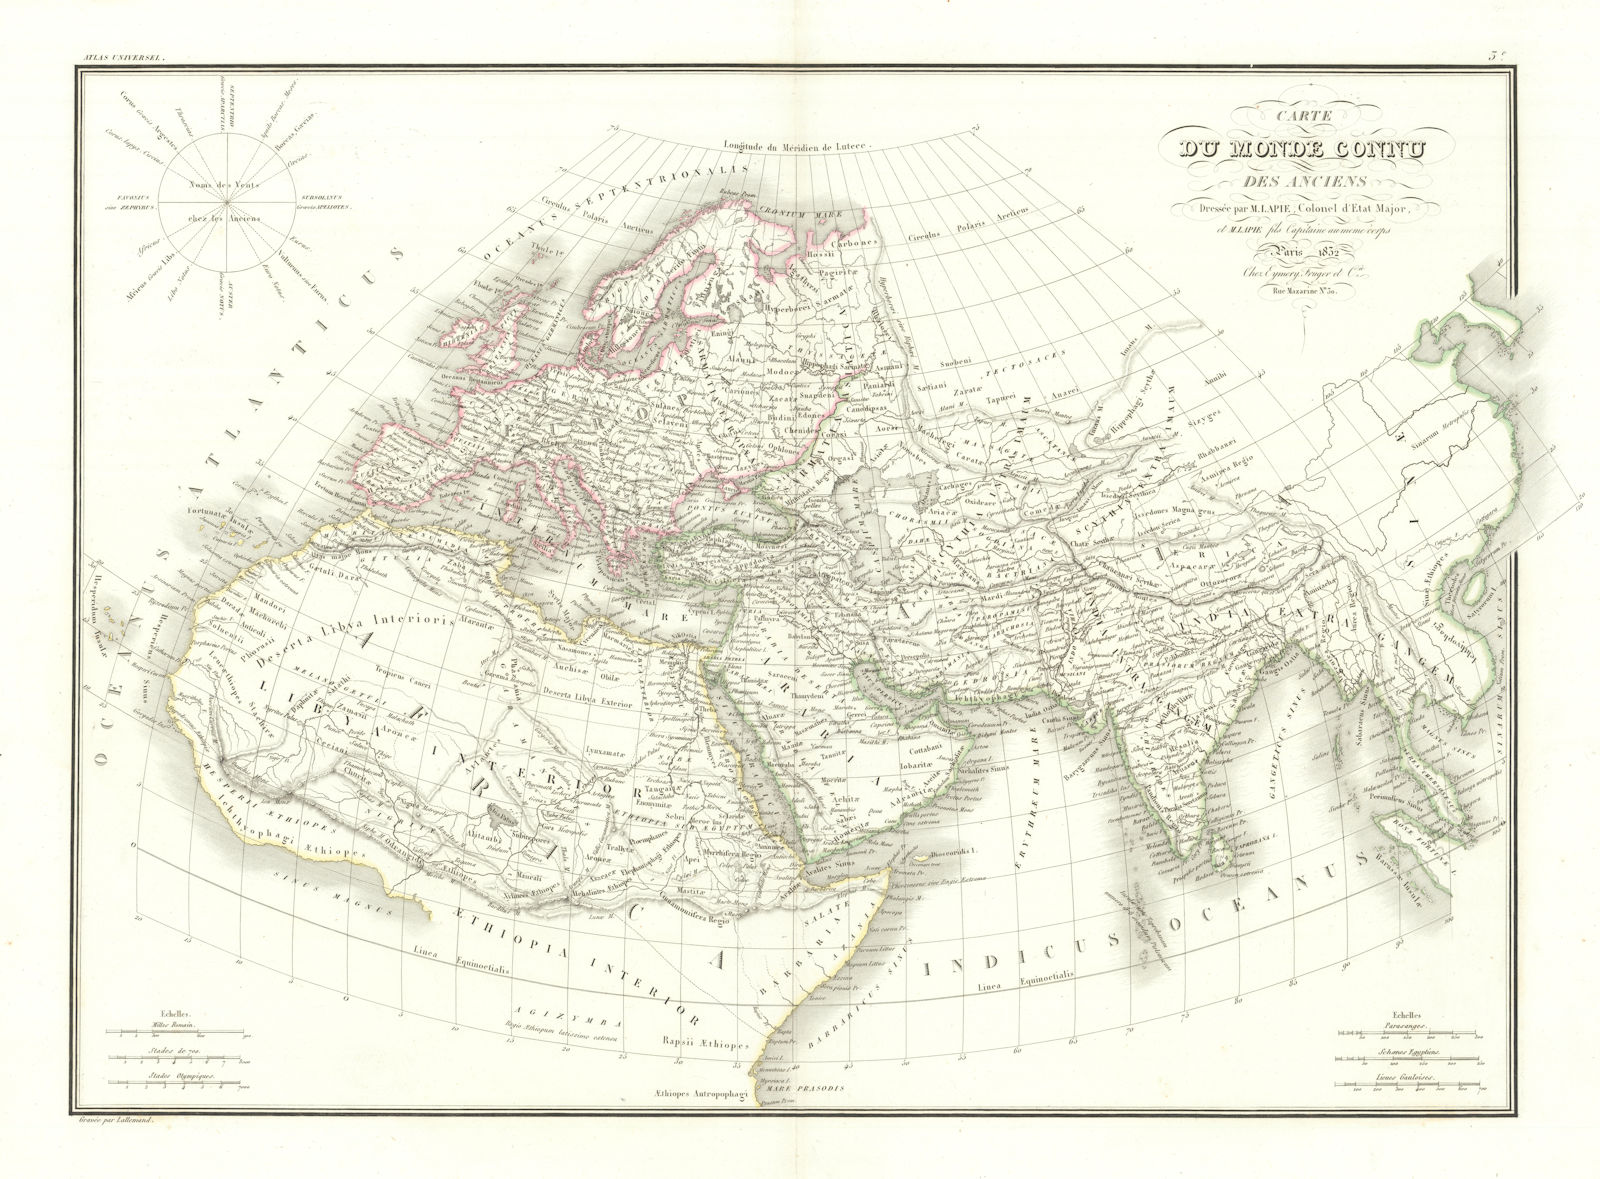 Carte du Monde connu des anciens. World as known to the Ancients. LAPIE 1832 map